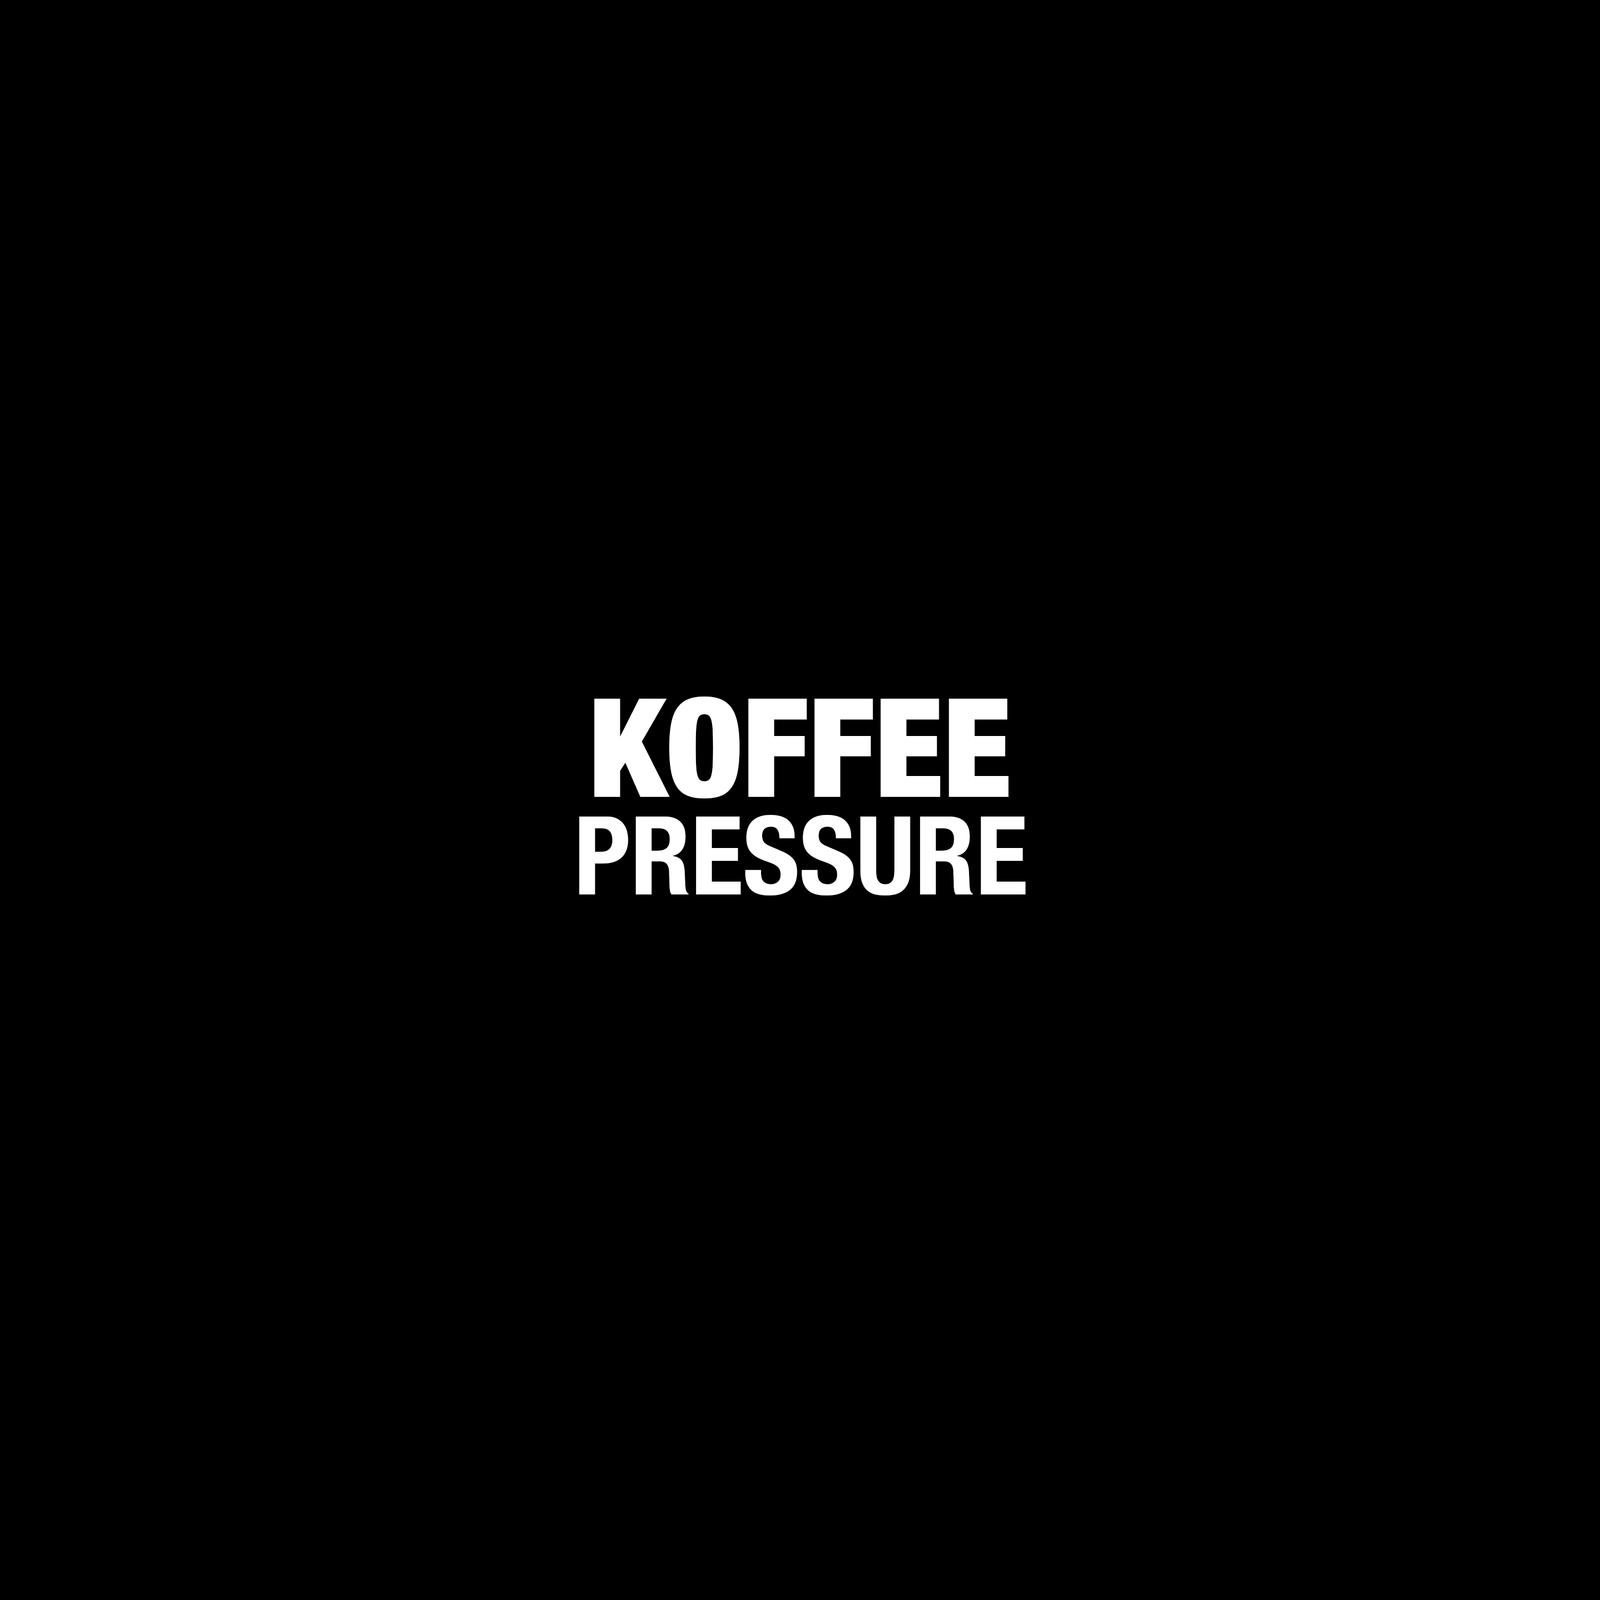 Koffee - Pressure